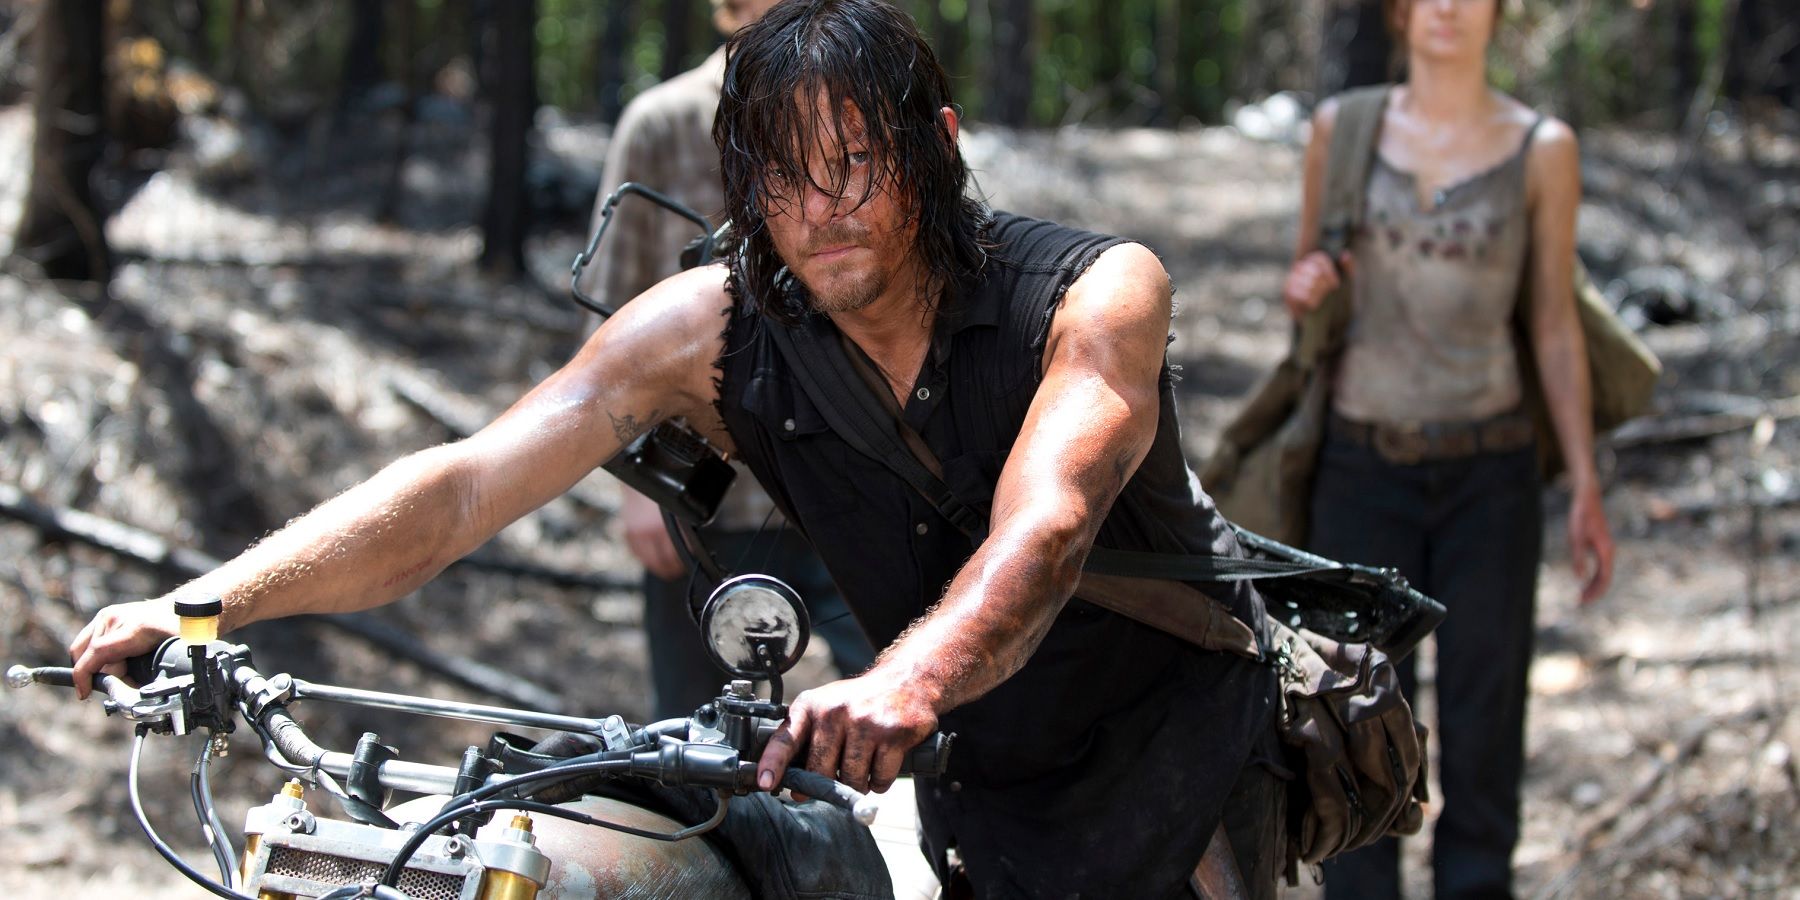 Daryl in The Walking Dead season 6